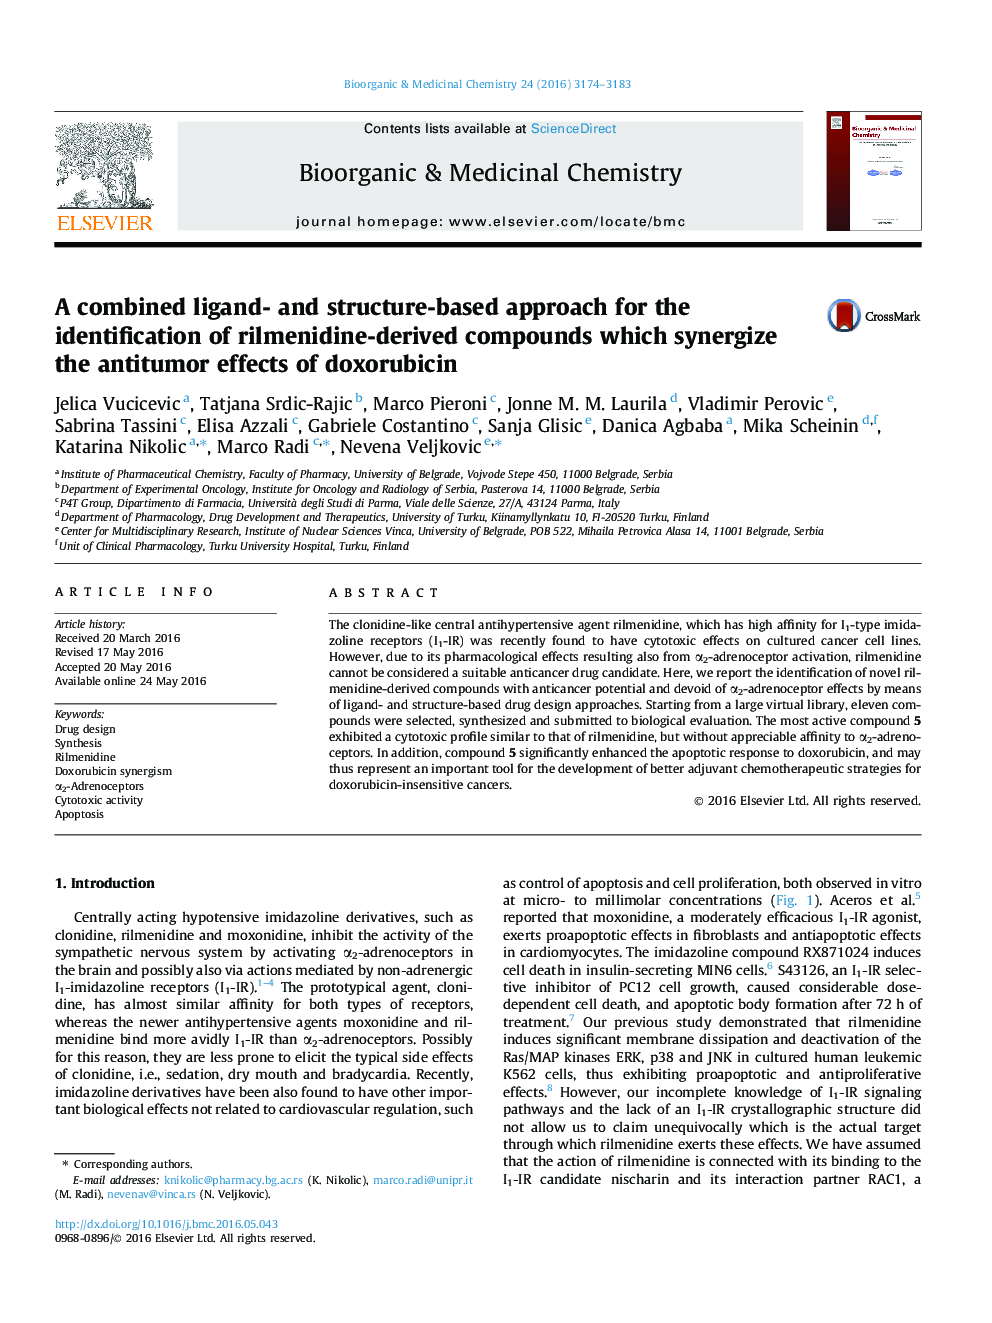 یک رویکرد مبتنی بر لیگاند و ساختار ترکیبی برای شناسایی ترکیبات حاصل از ریلمنیدین که اثرات ضد تومور دوکسوروبیسین را هموار می کند 